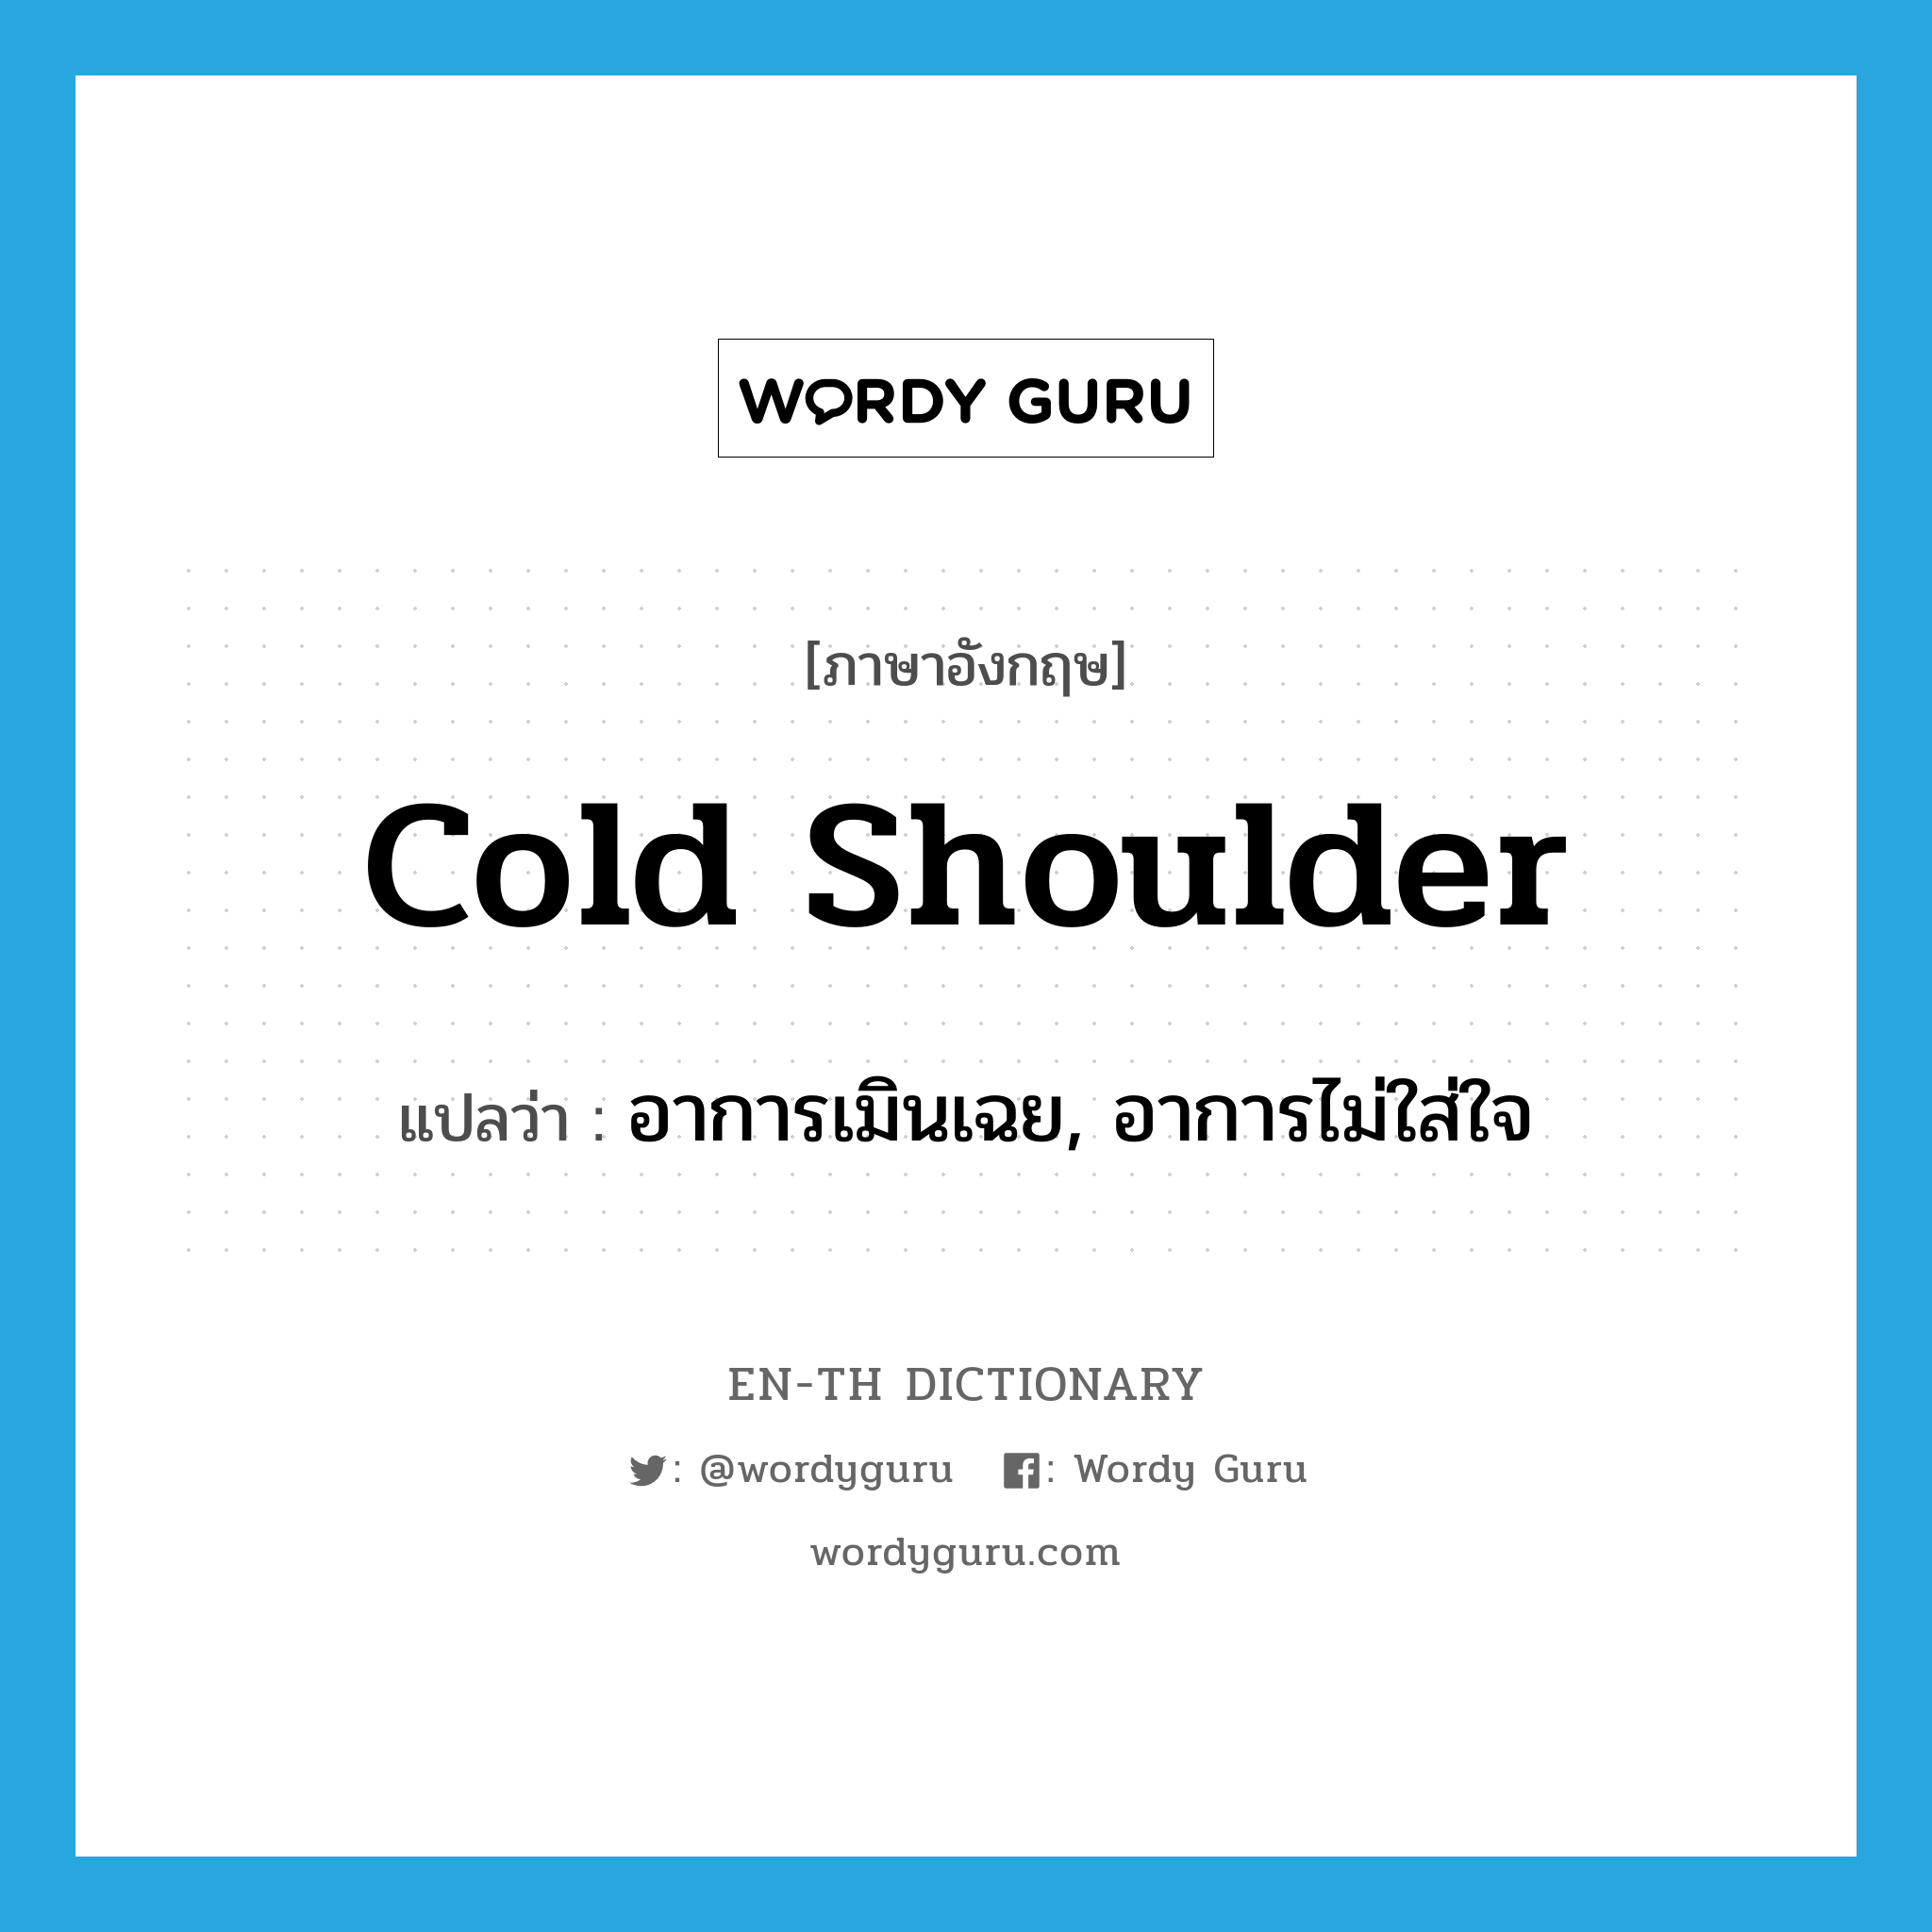 cold shoulder แปลว่า?, คำศัพท์ภาษาอังกฤษ cold shoulder แปลว่า อาการเมินเฉย, อาการไม่ใส่ใจ ประเภท SL หมวด SL